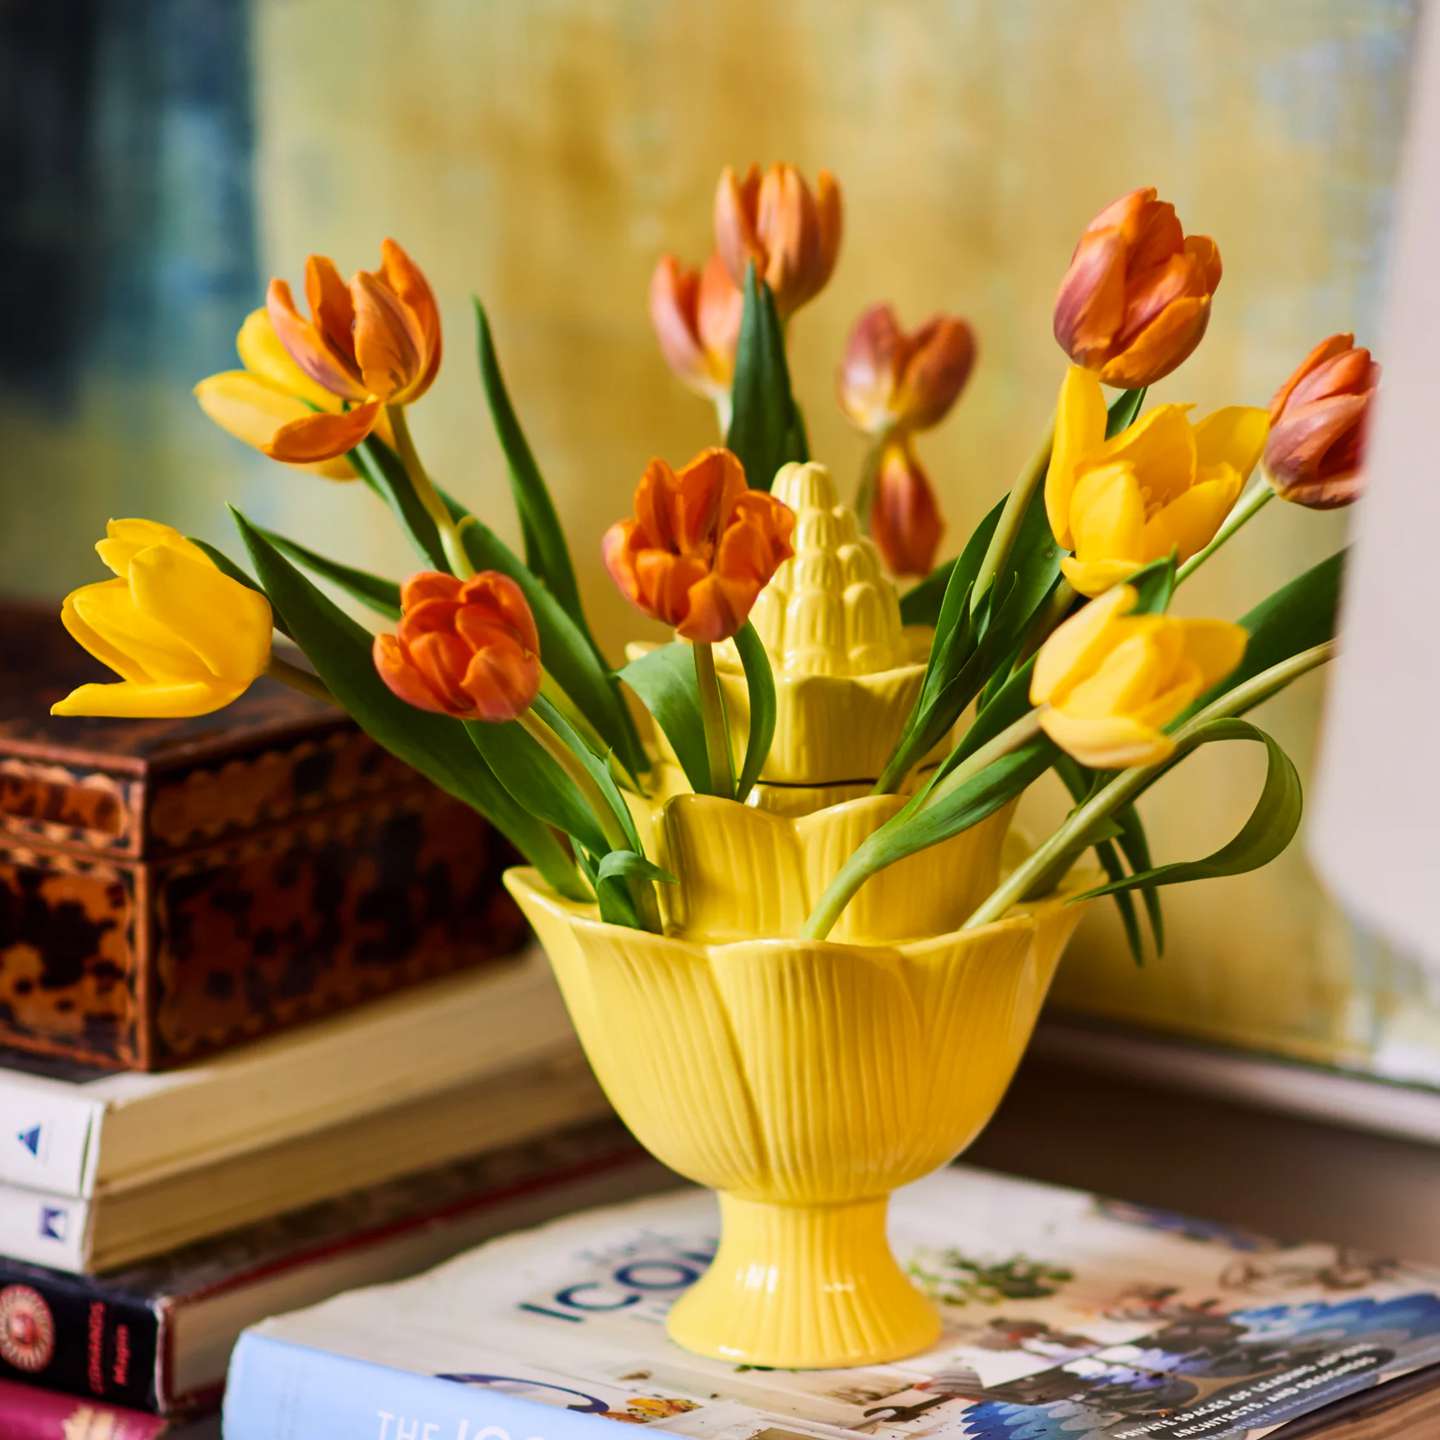 tulipiere tulip vase